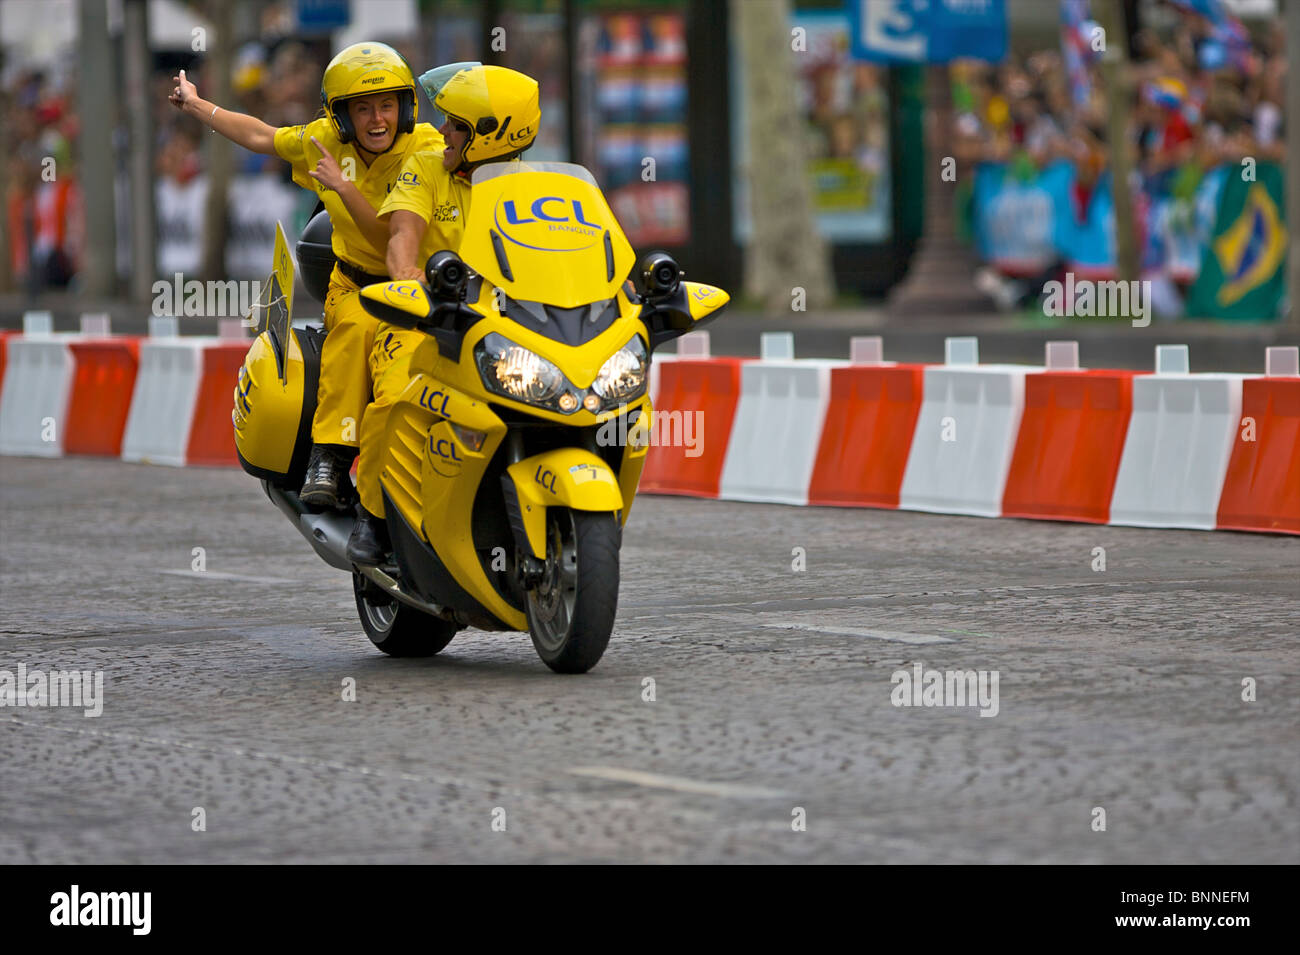 Die LCL Motorrad Guides führen die Radprofis der Tour de France auf den  Champs-Elysées in Paris, Frankreich Stockfotografie - Alamy